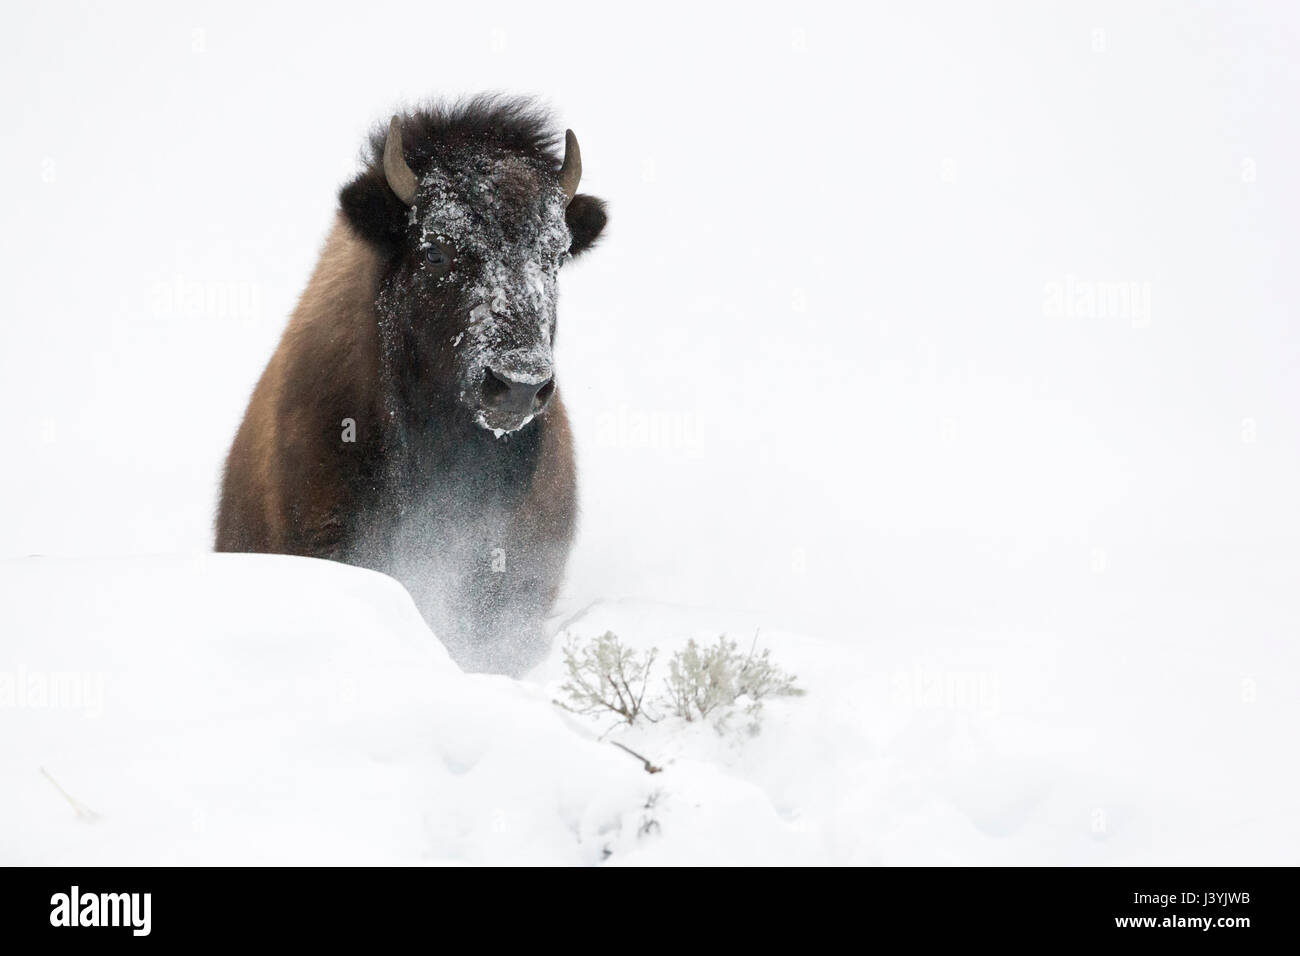 Bison d'Amérique ( Bison bison ) en hiver, briser une petite colline de neige pelucheuse, frontal tourné, le Parc National de Yellowstone, Wyoming, USA Banque D'Images